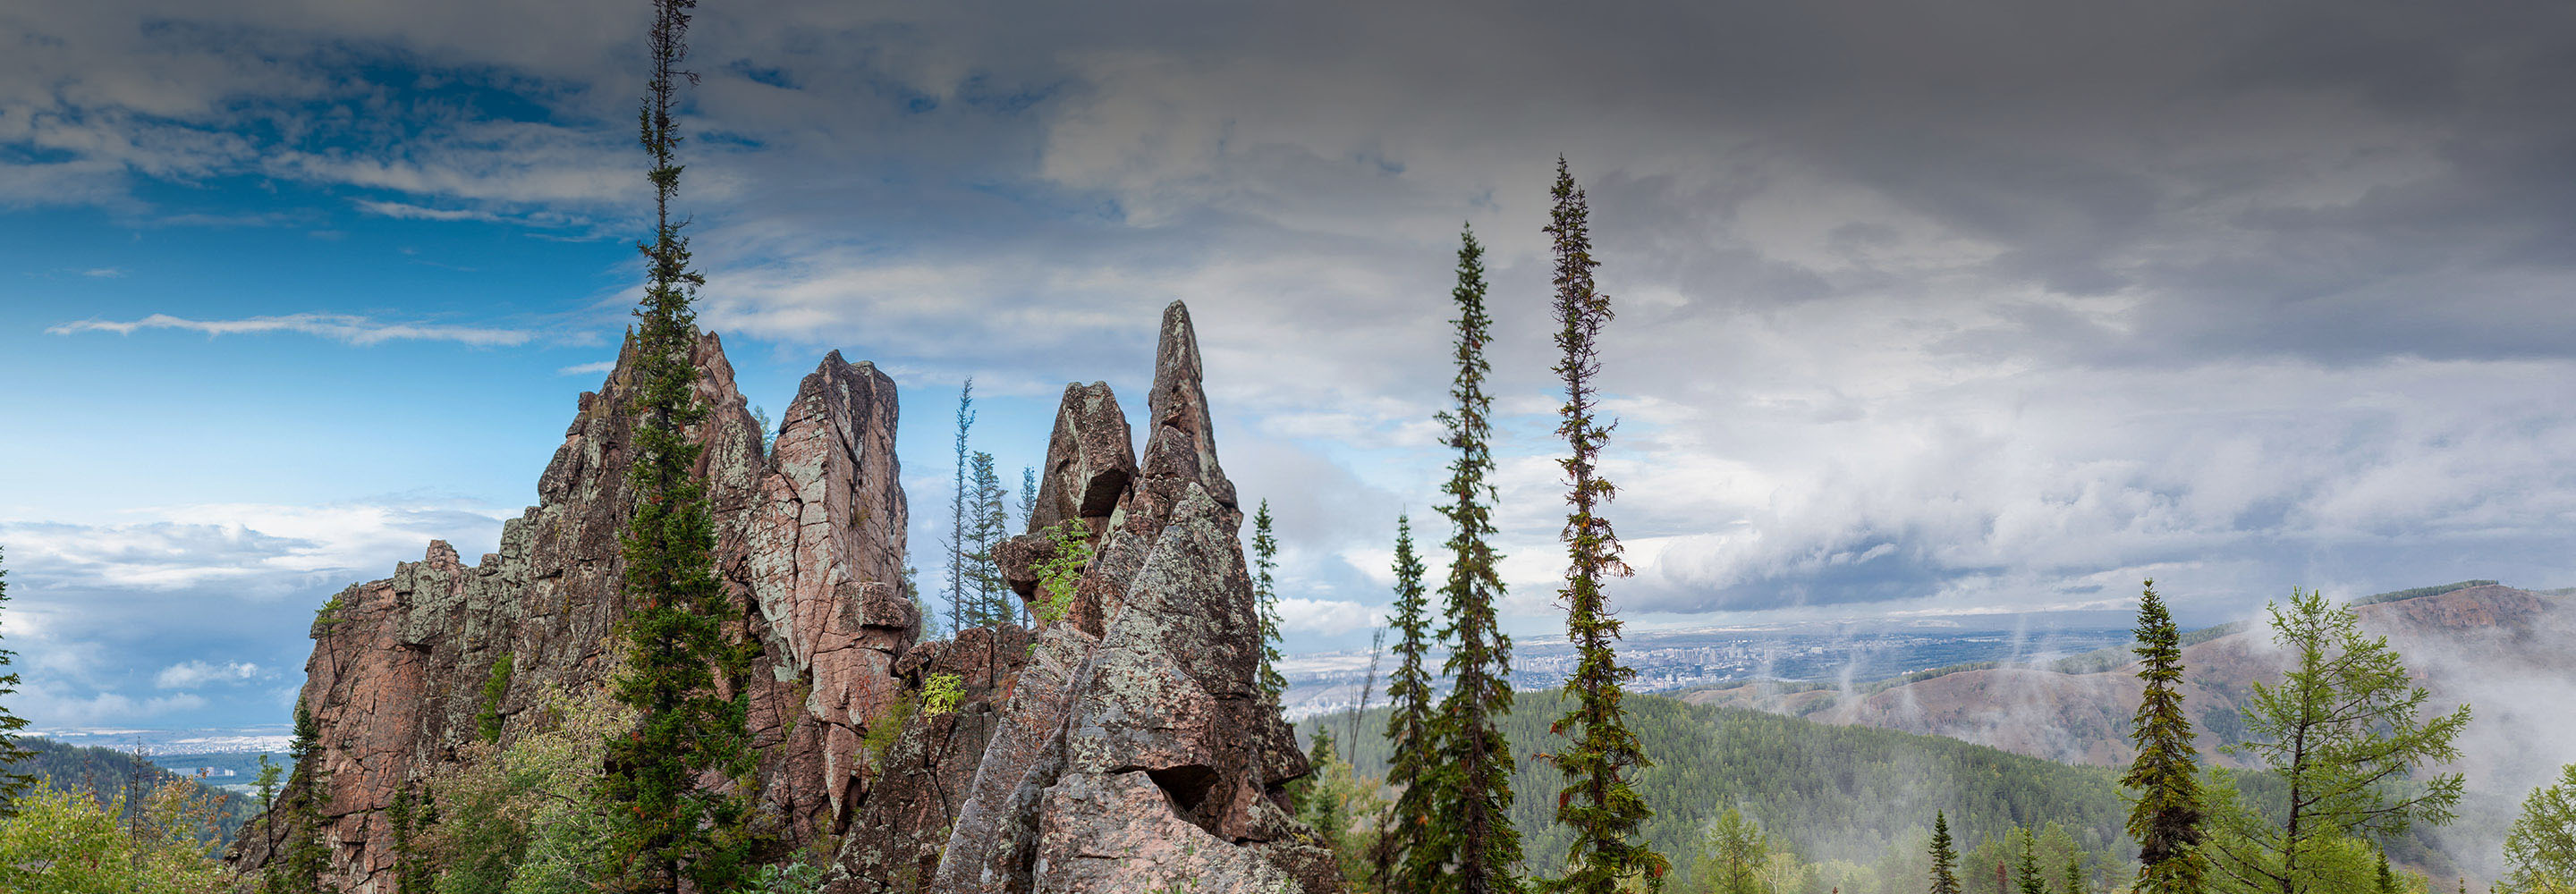 12 красивых заповедников и национальных парков в России